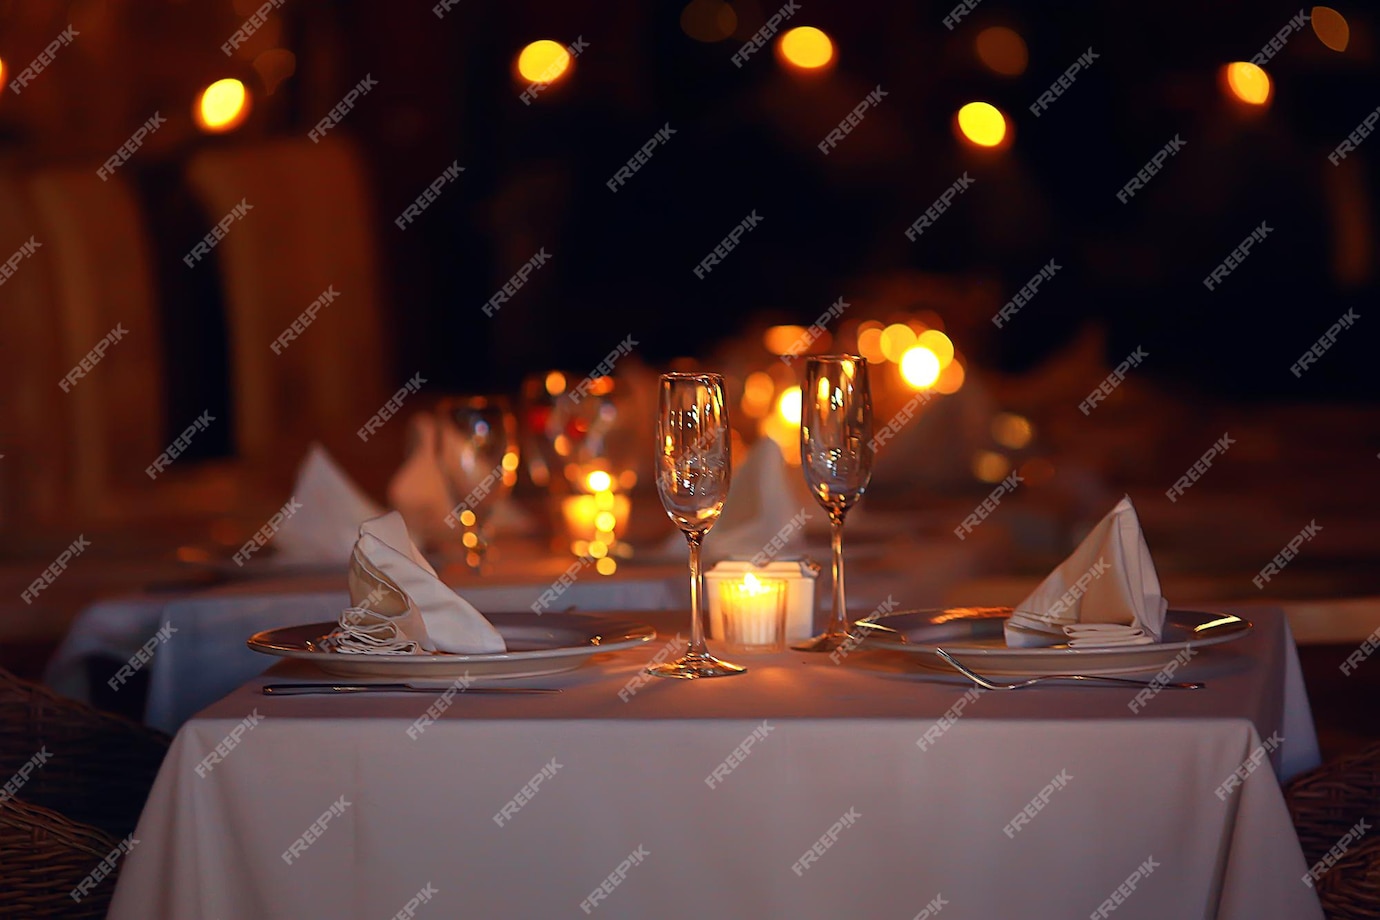 Premium Photo | Romance dinner restaurant table setting, background in ...